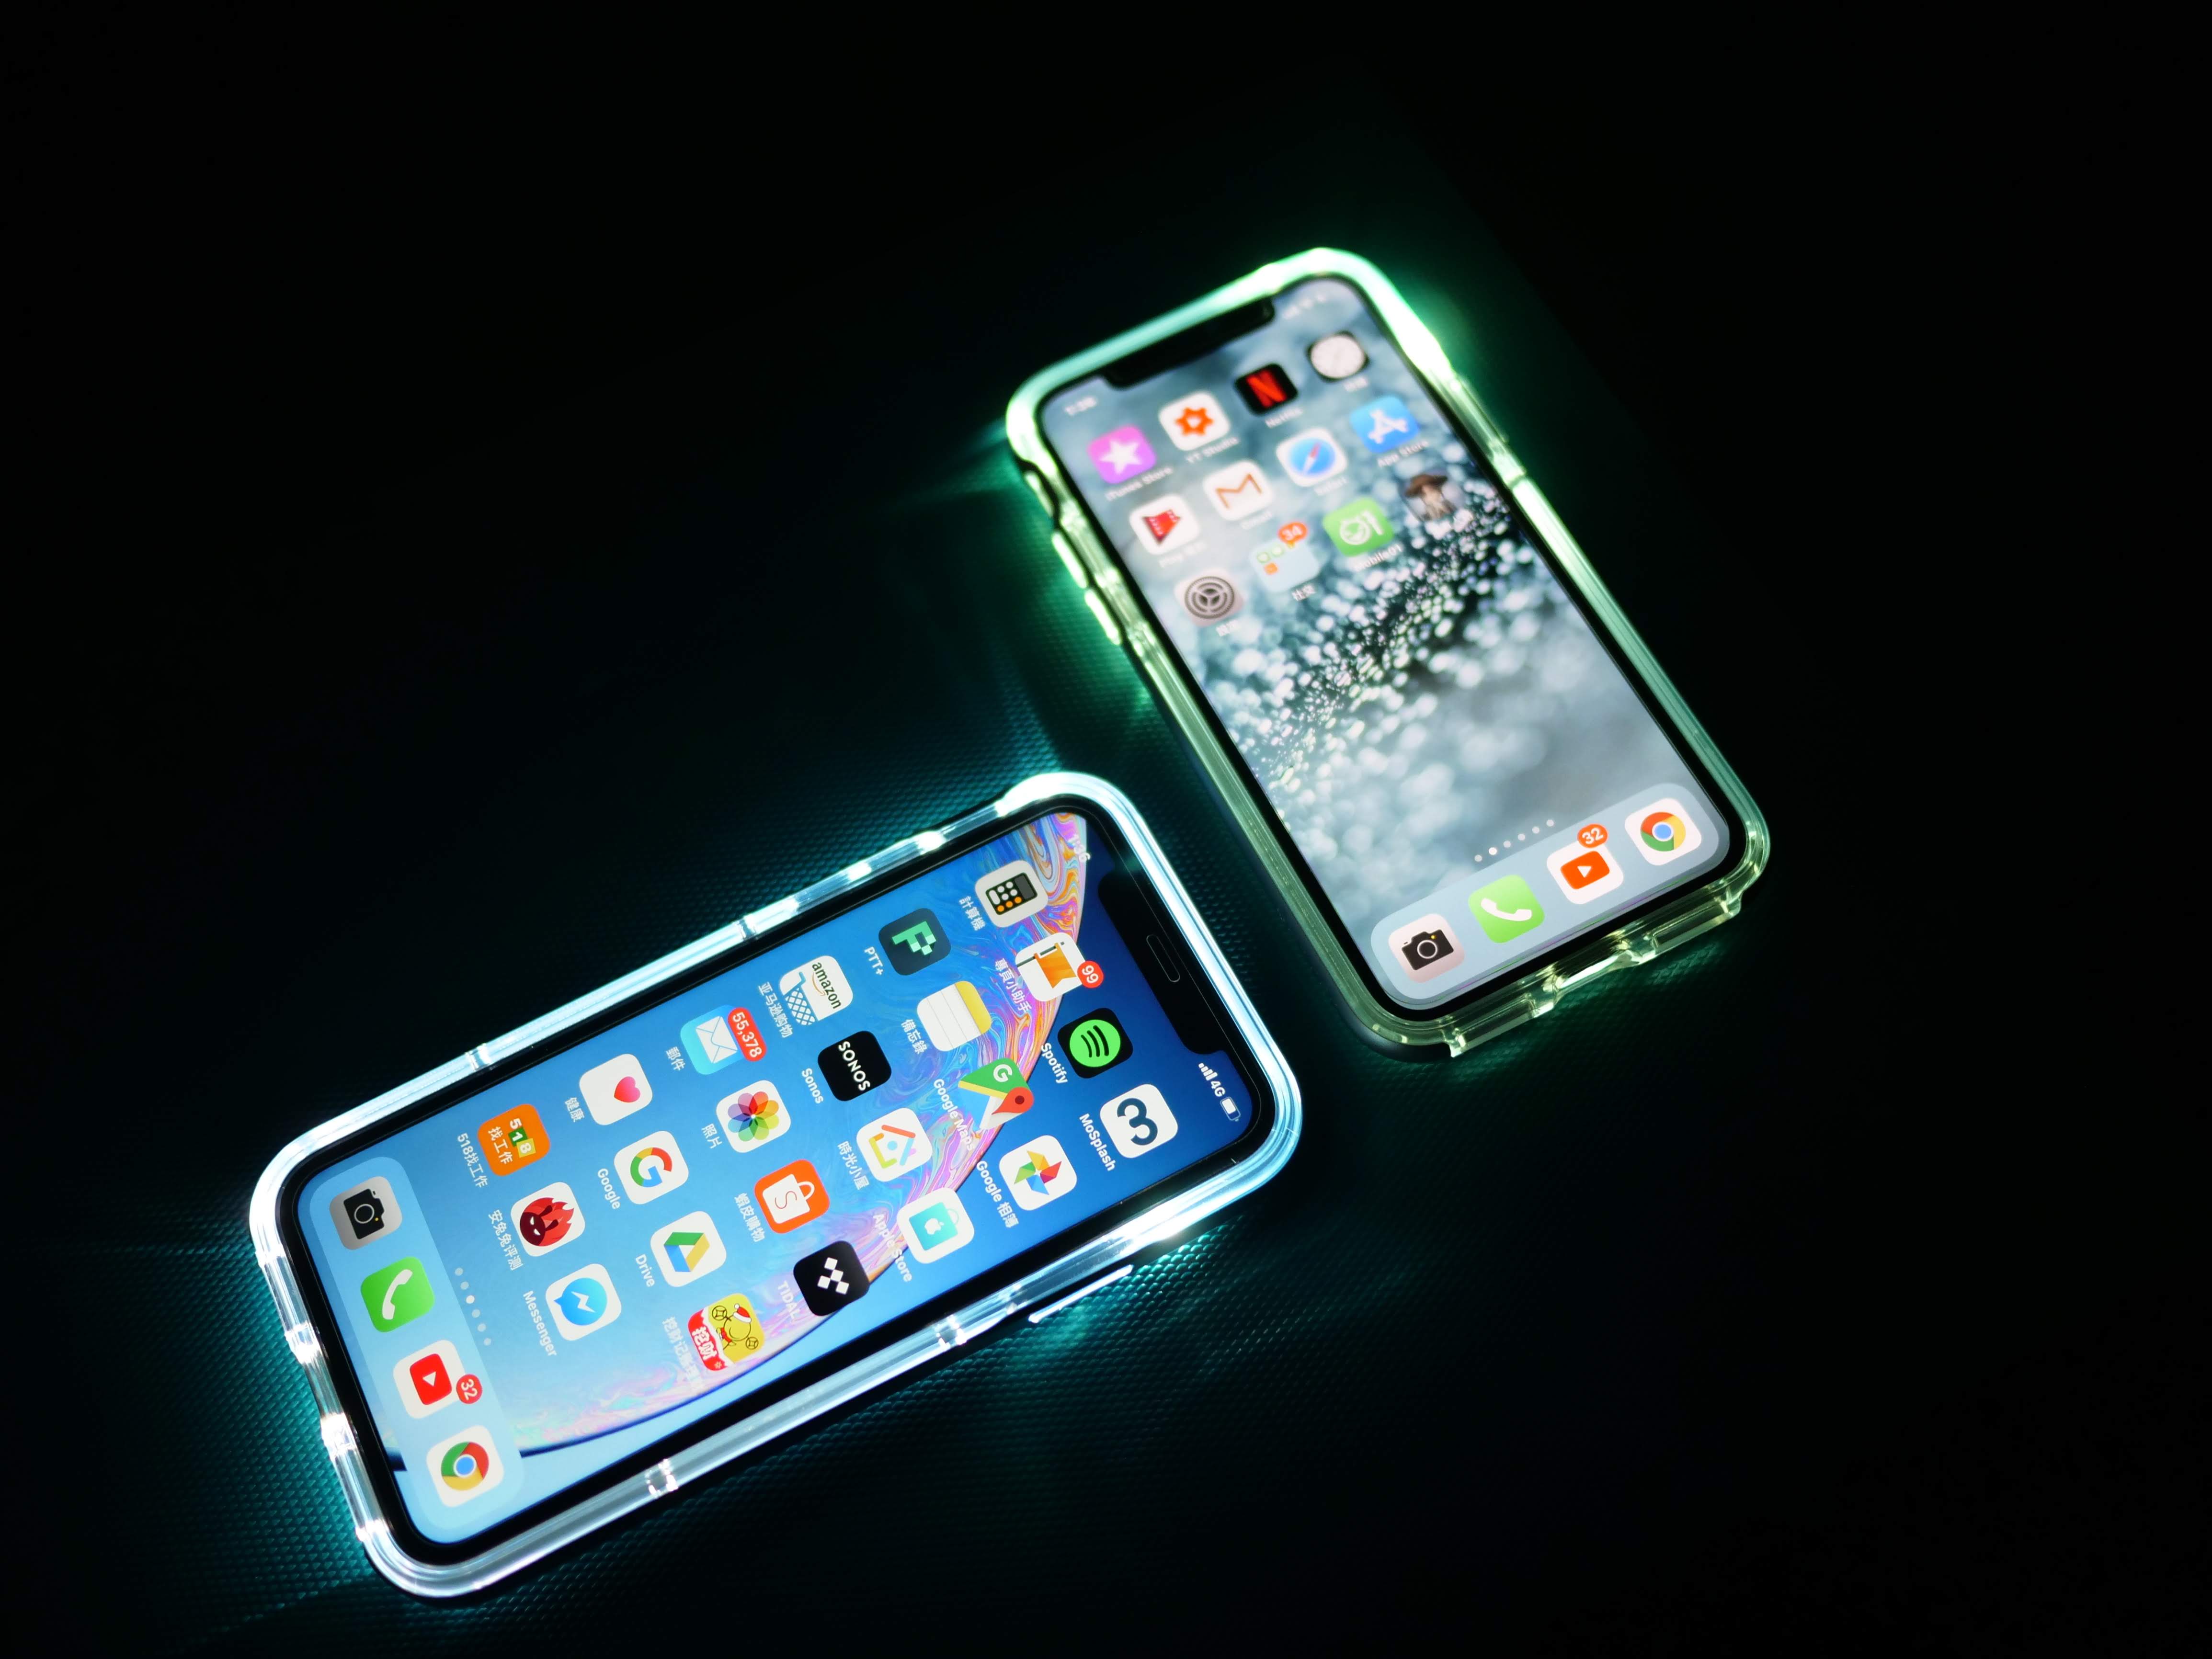 Spigen iPhone X/XS/XR 軍規防摔手機殼開箱 | Hybrid NX / Neo Hybrid Crystal | - 手機殼 - 科技狗 3C DOG